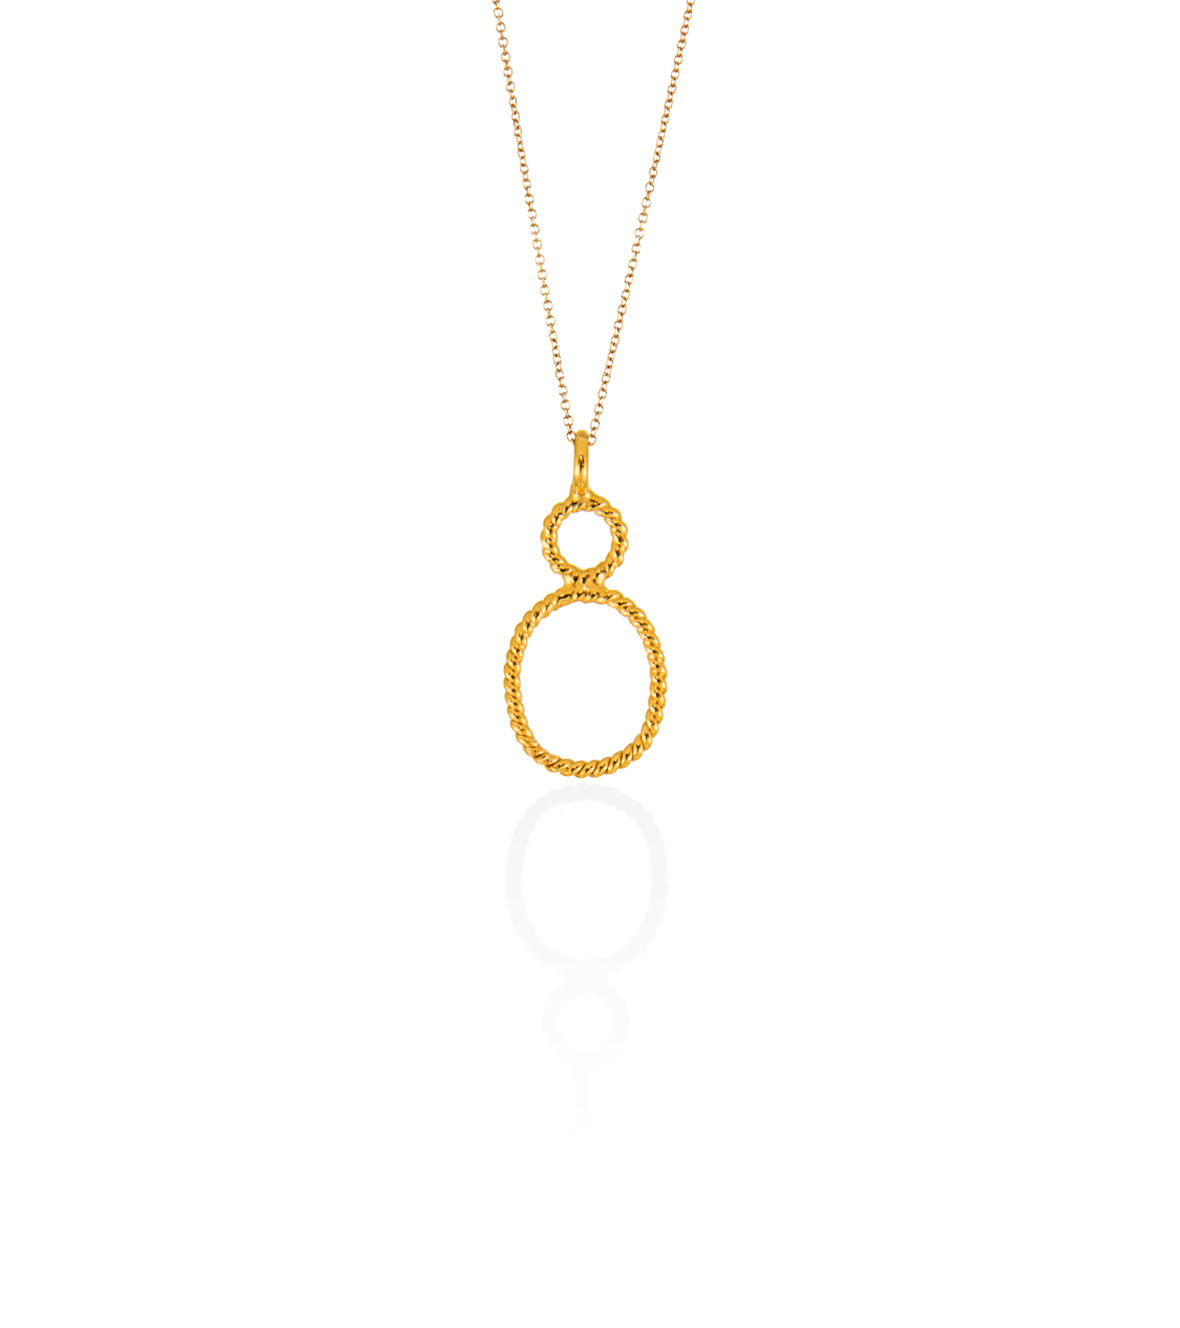 Tiny Oval pendant by Christina Soubli